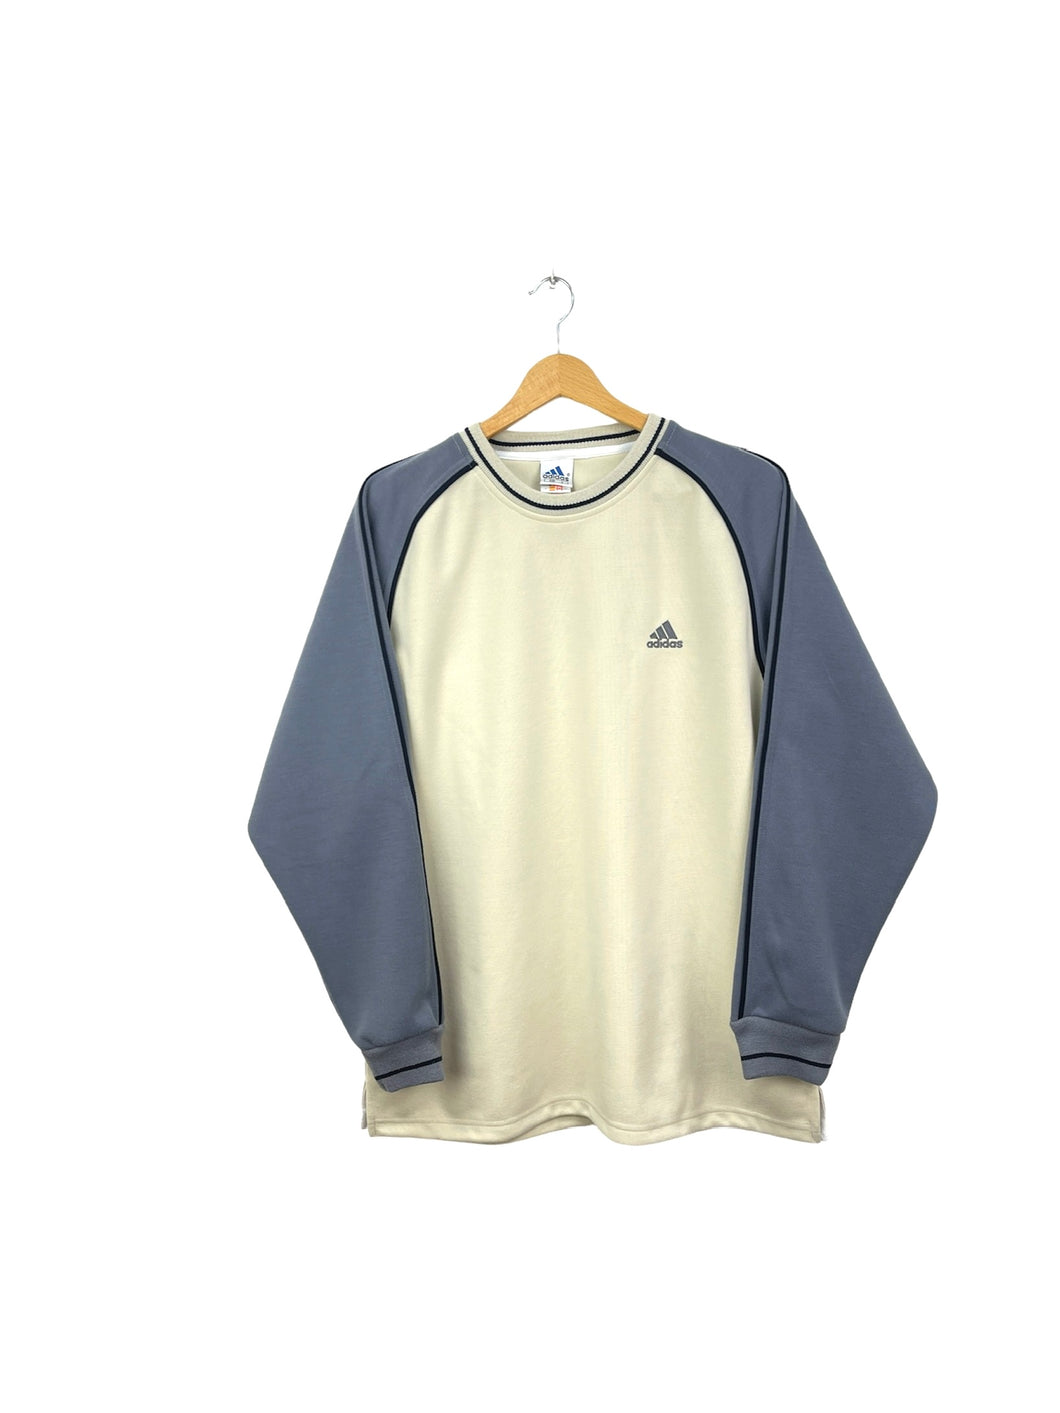 Adidas Sweatshirt - Large